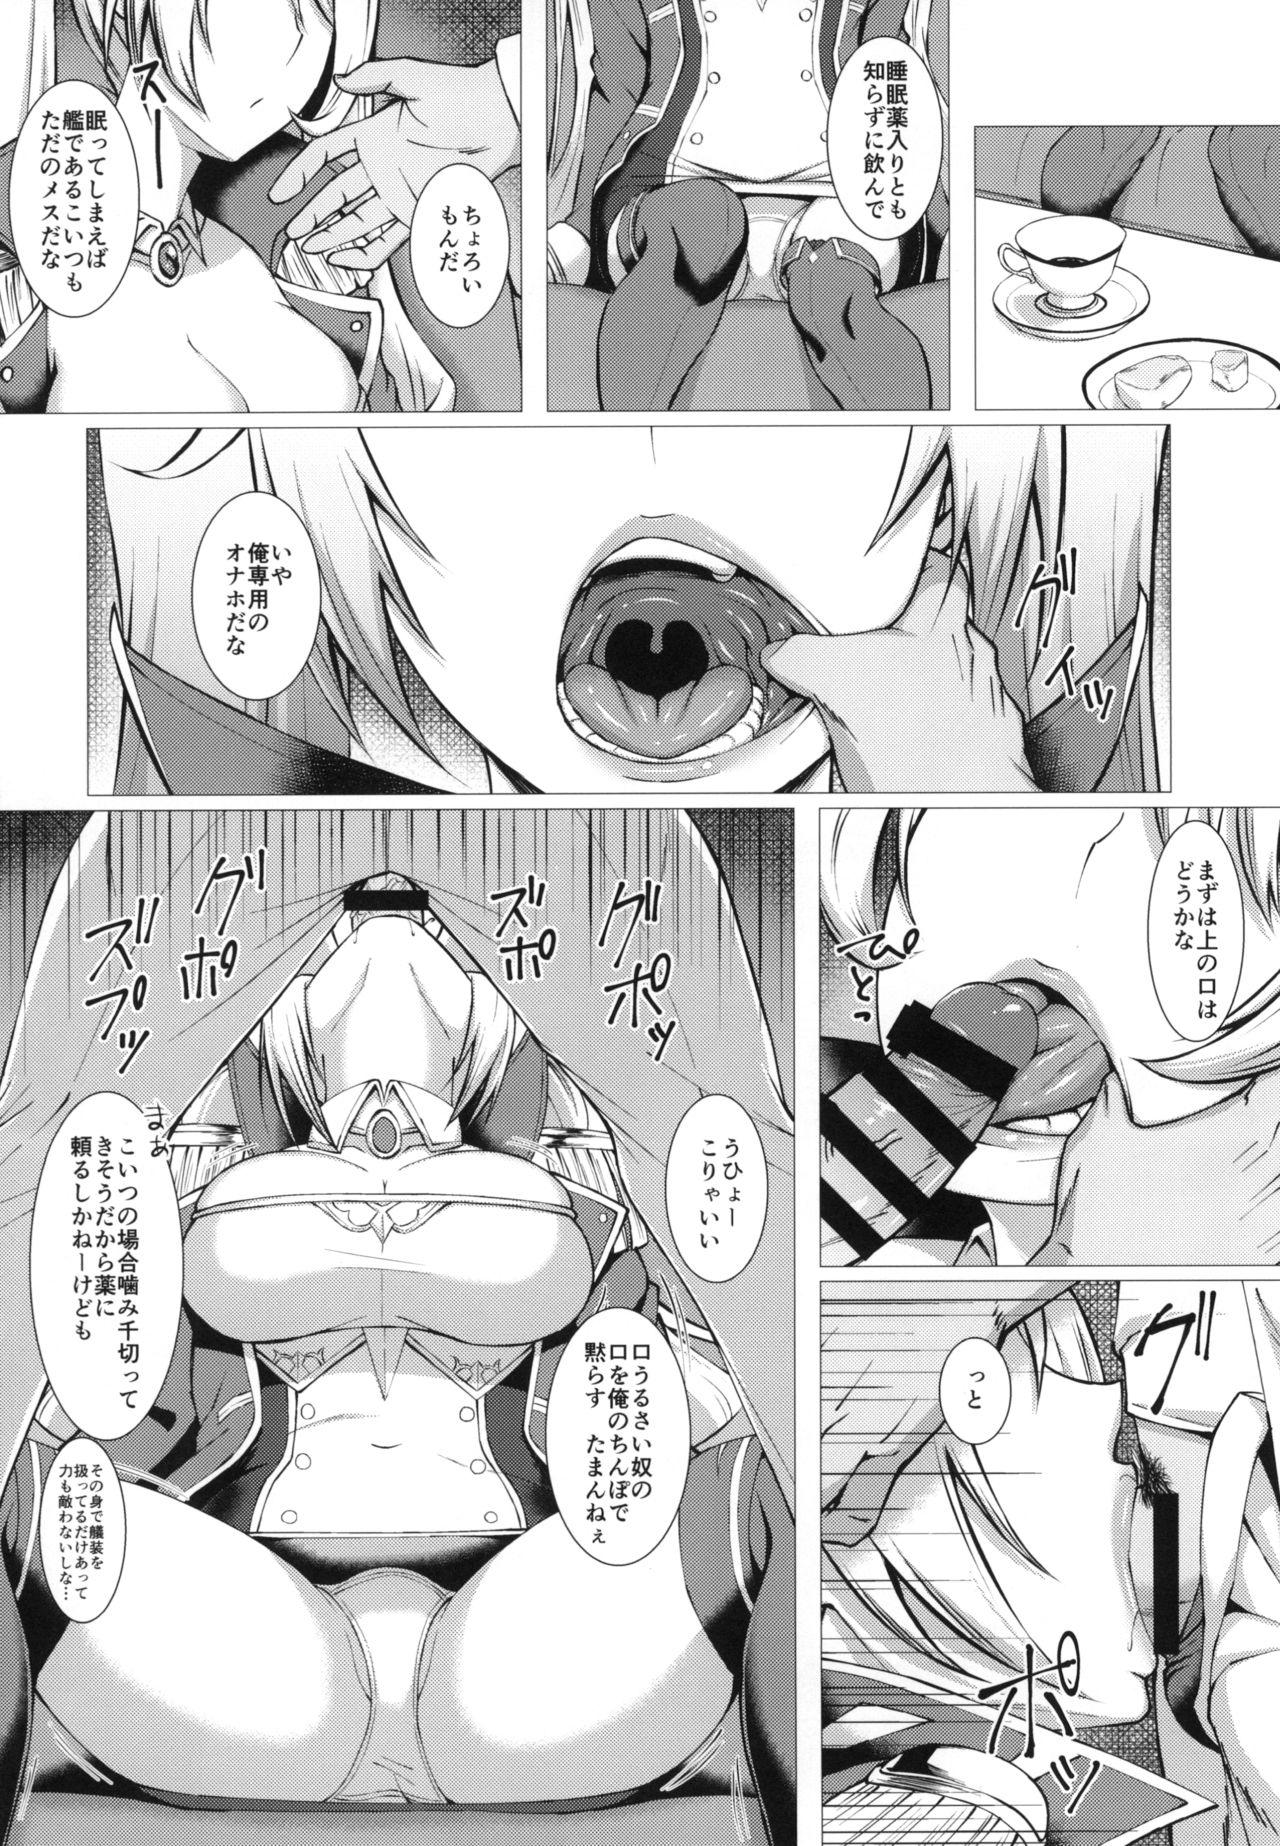 Comedor Nelson o Nemurase Onaho ni Suru - Azur lane Ass Licking - Page 3